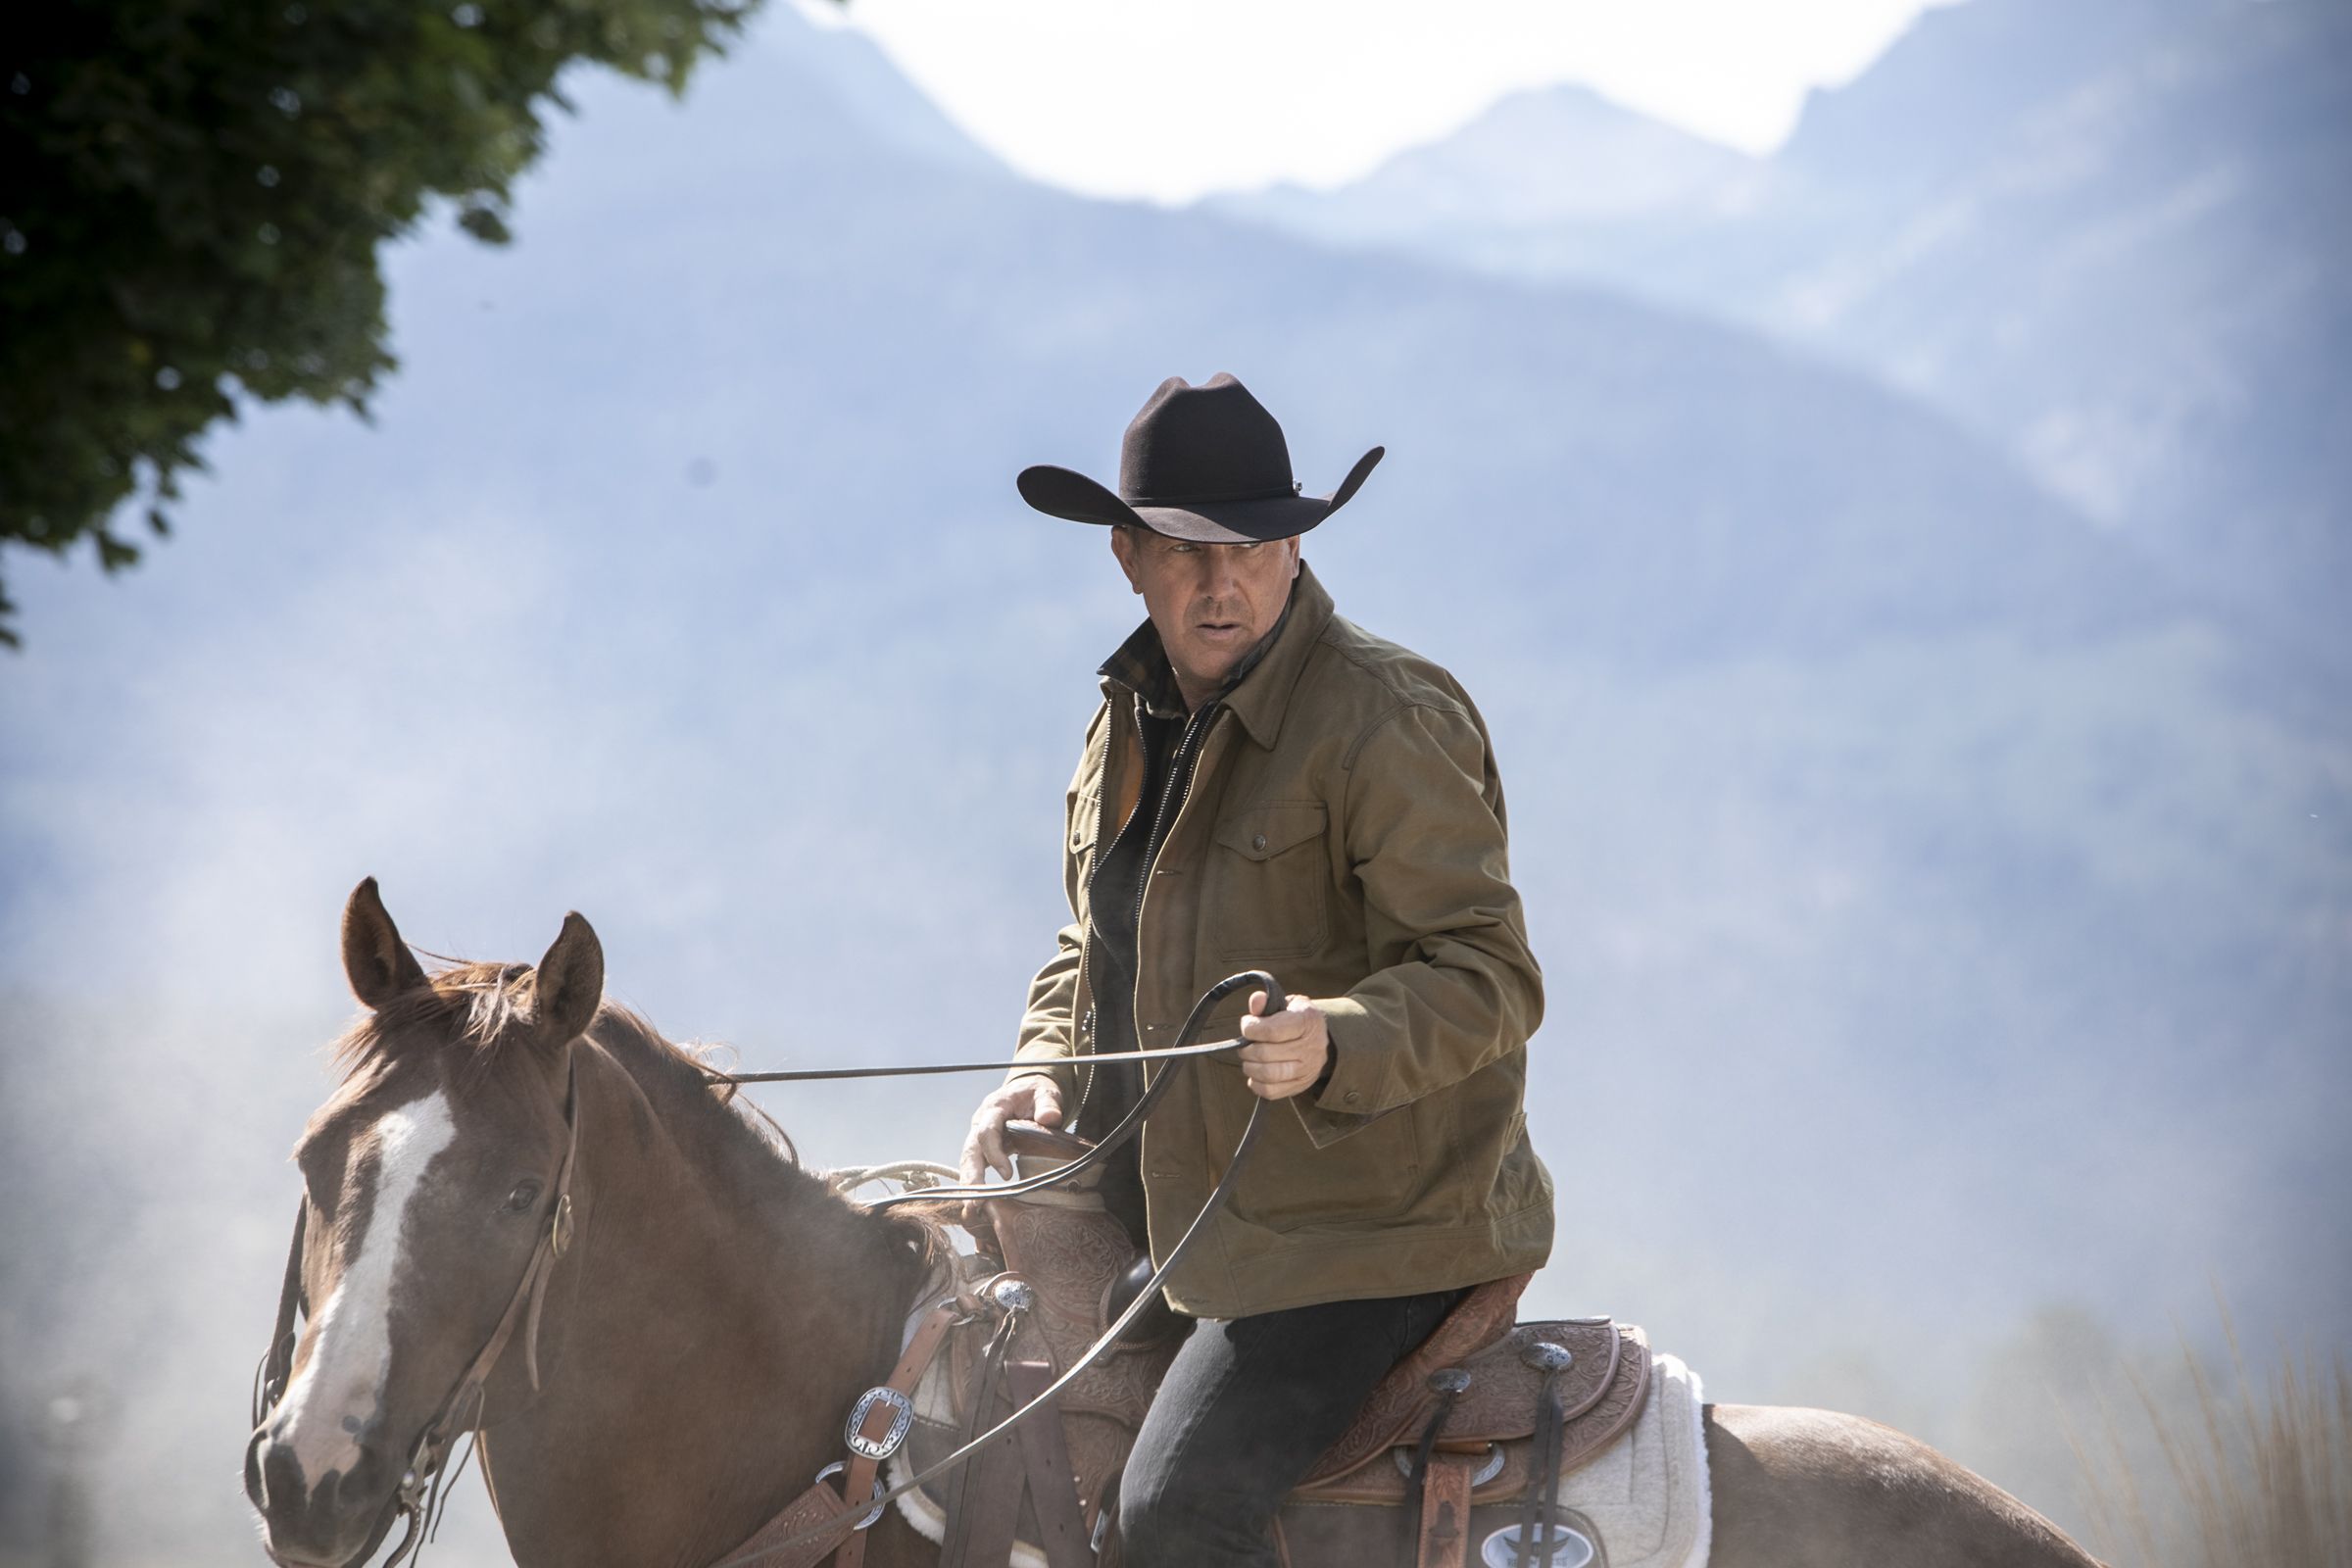 فصل چهارم سریال Yellowstone با بازی کوین کاستنر به پربیننده ترین سریال یا فیلم هفته گذشته در ایالات متحده تبدیل شد